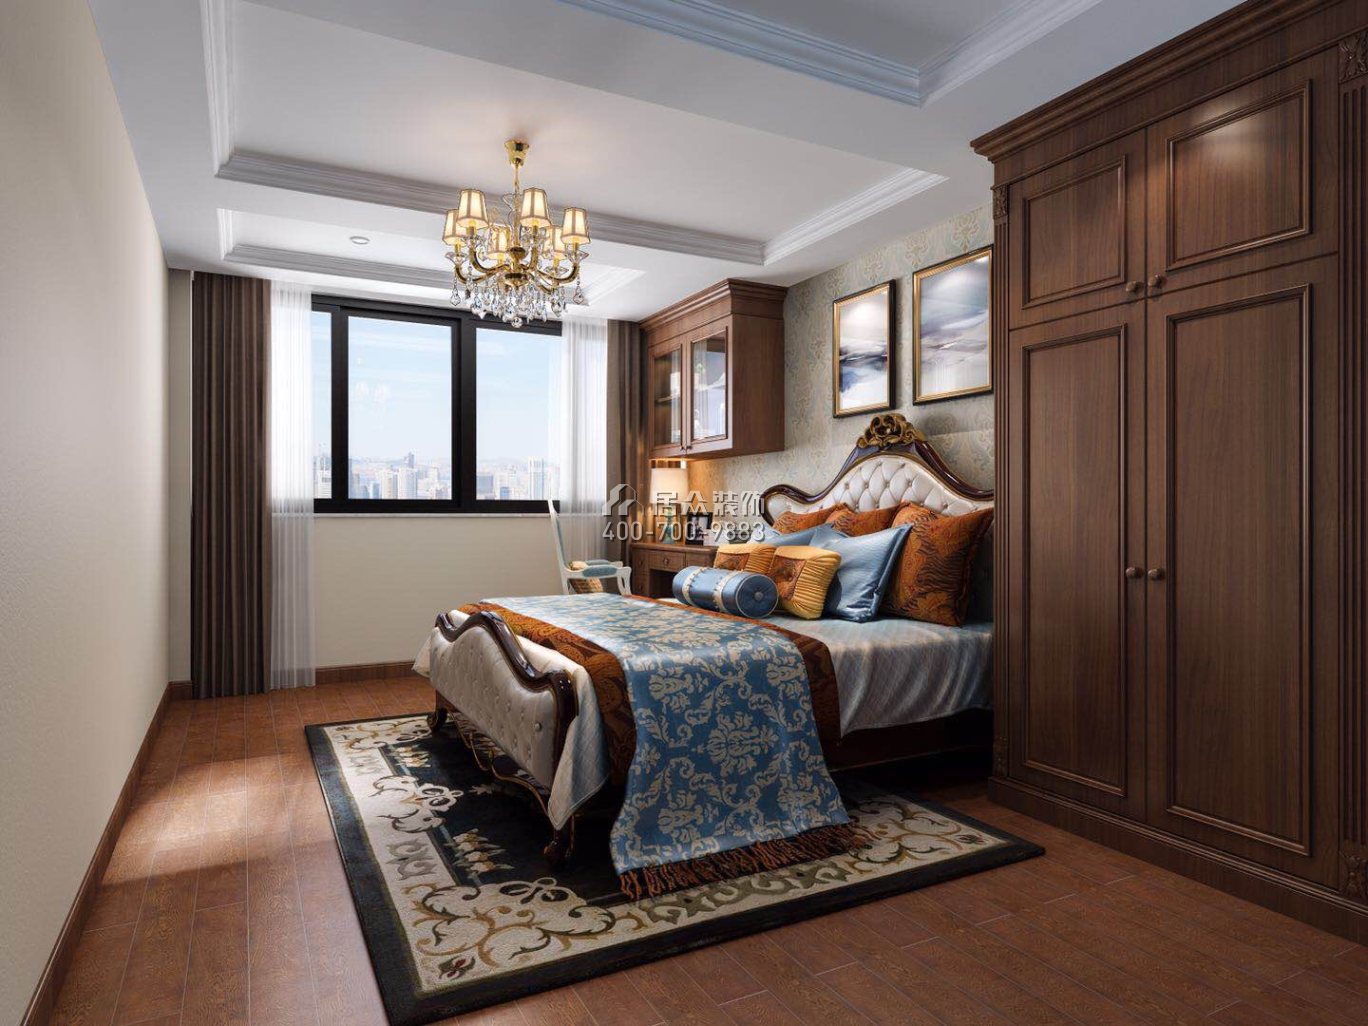 福莲花园170平方米欧式风格复式户型卧室装修效果图